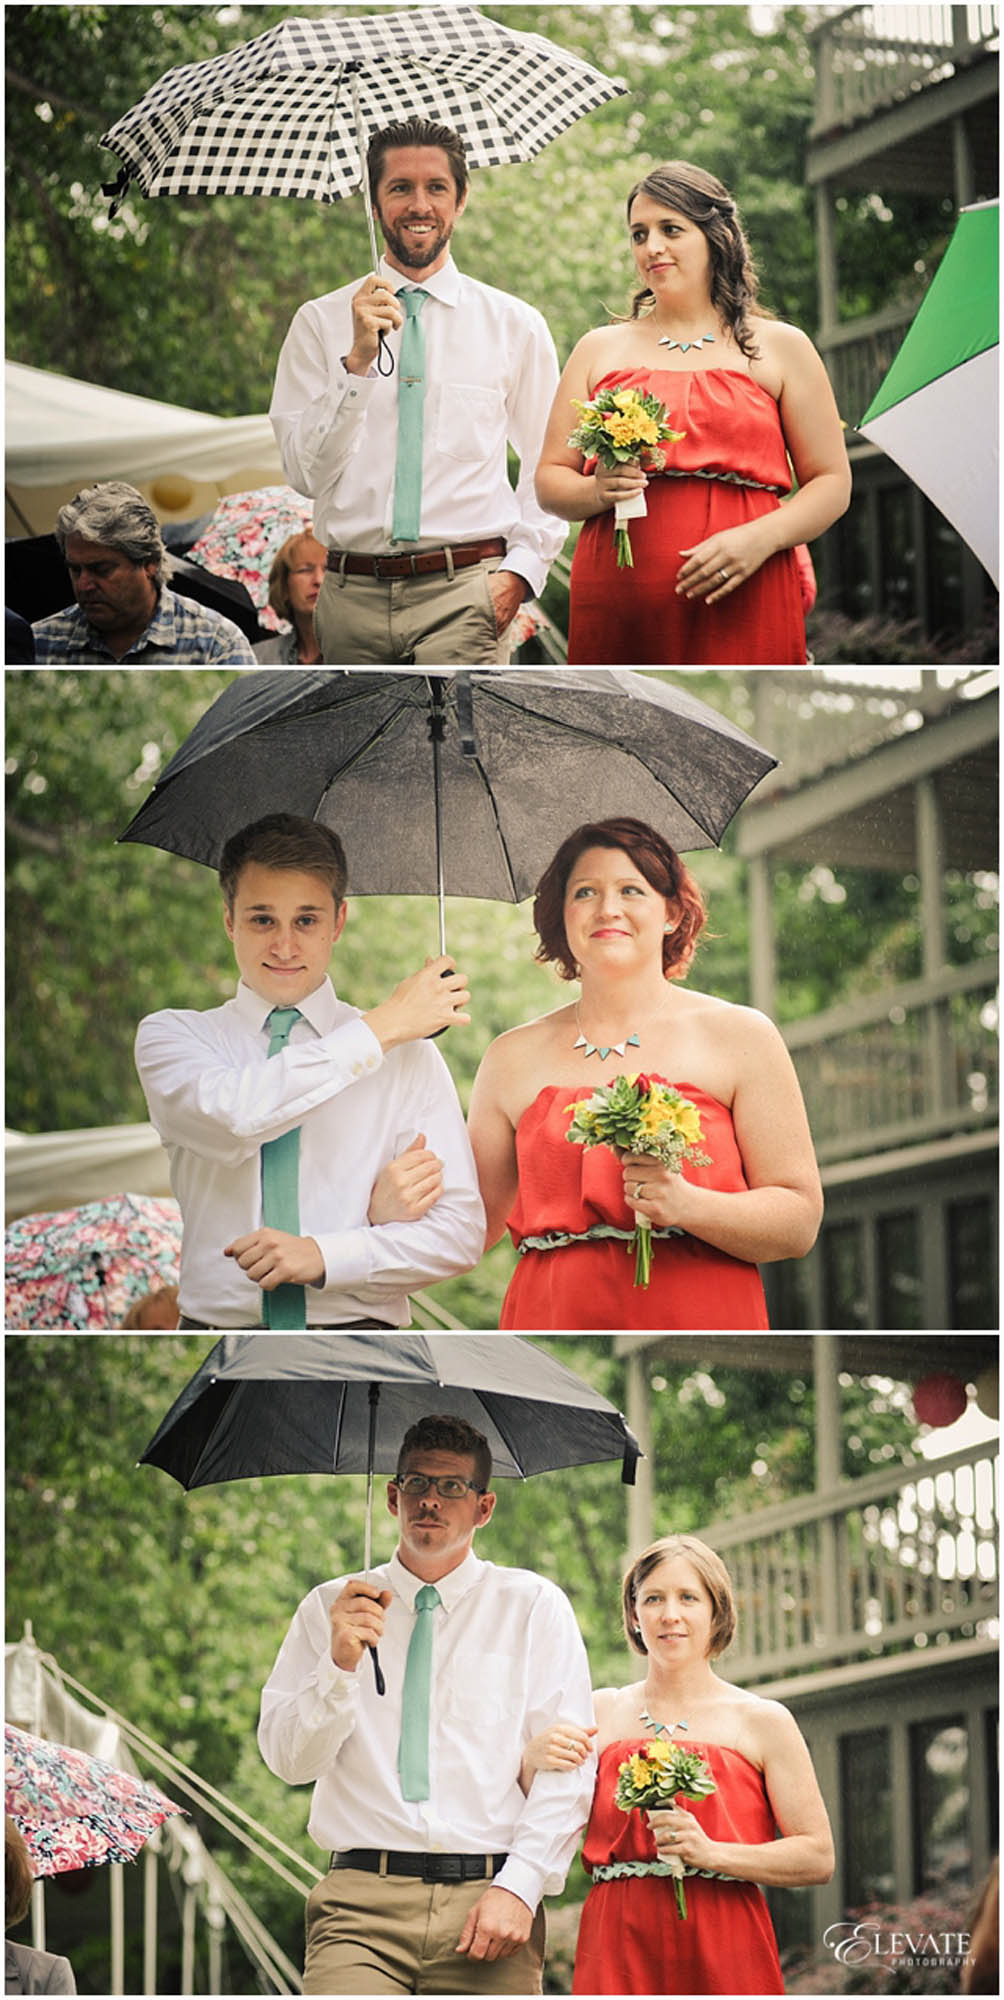 Rainy Colorado Outdoor Wedding Ceremony